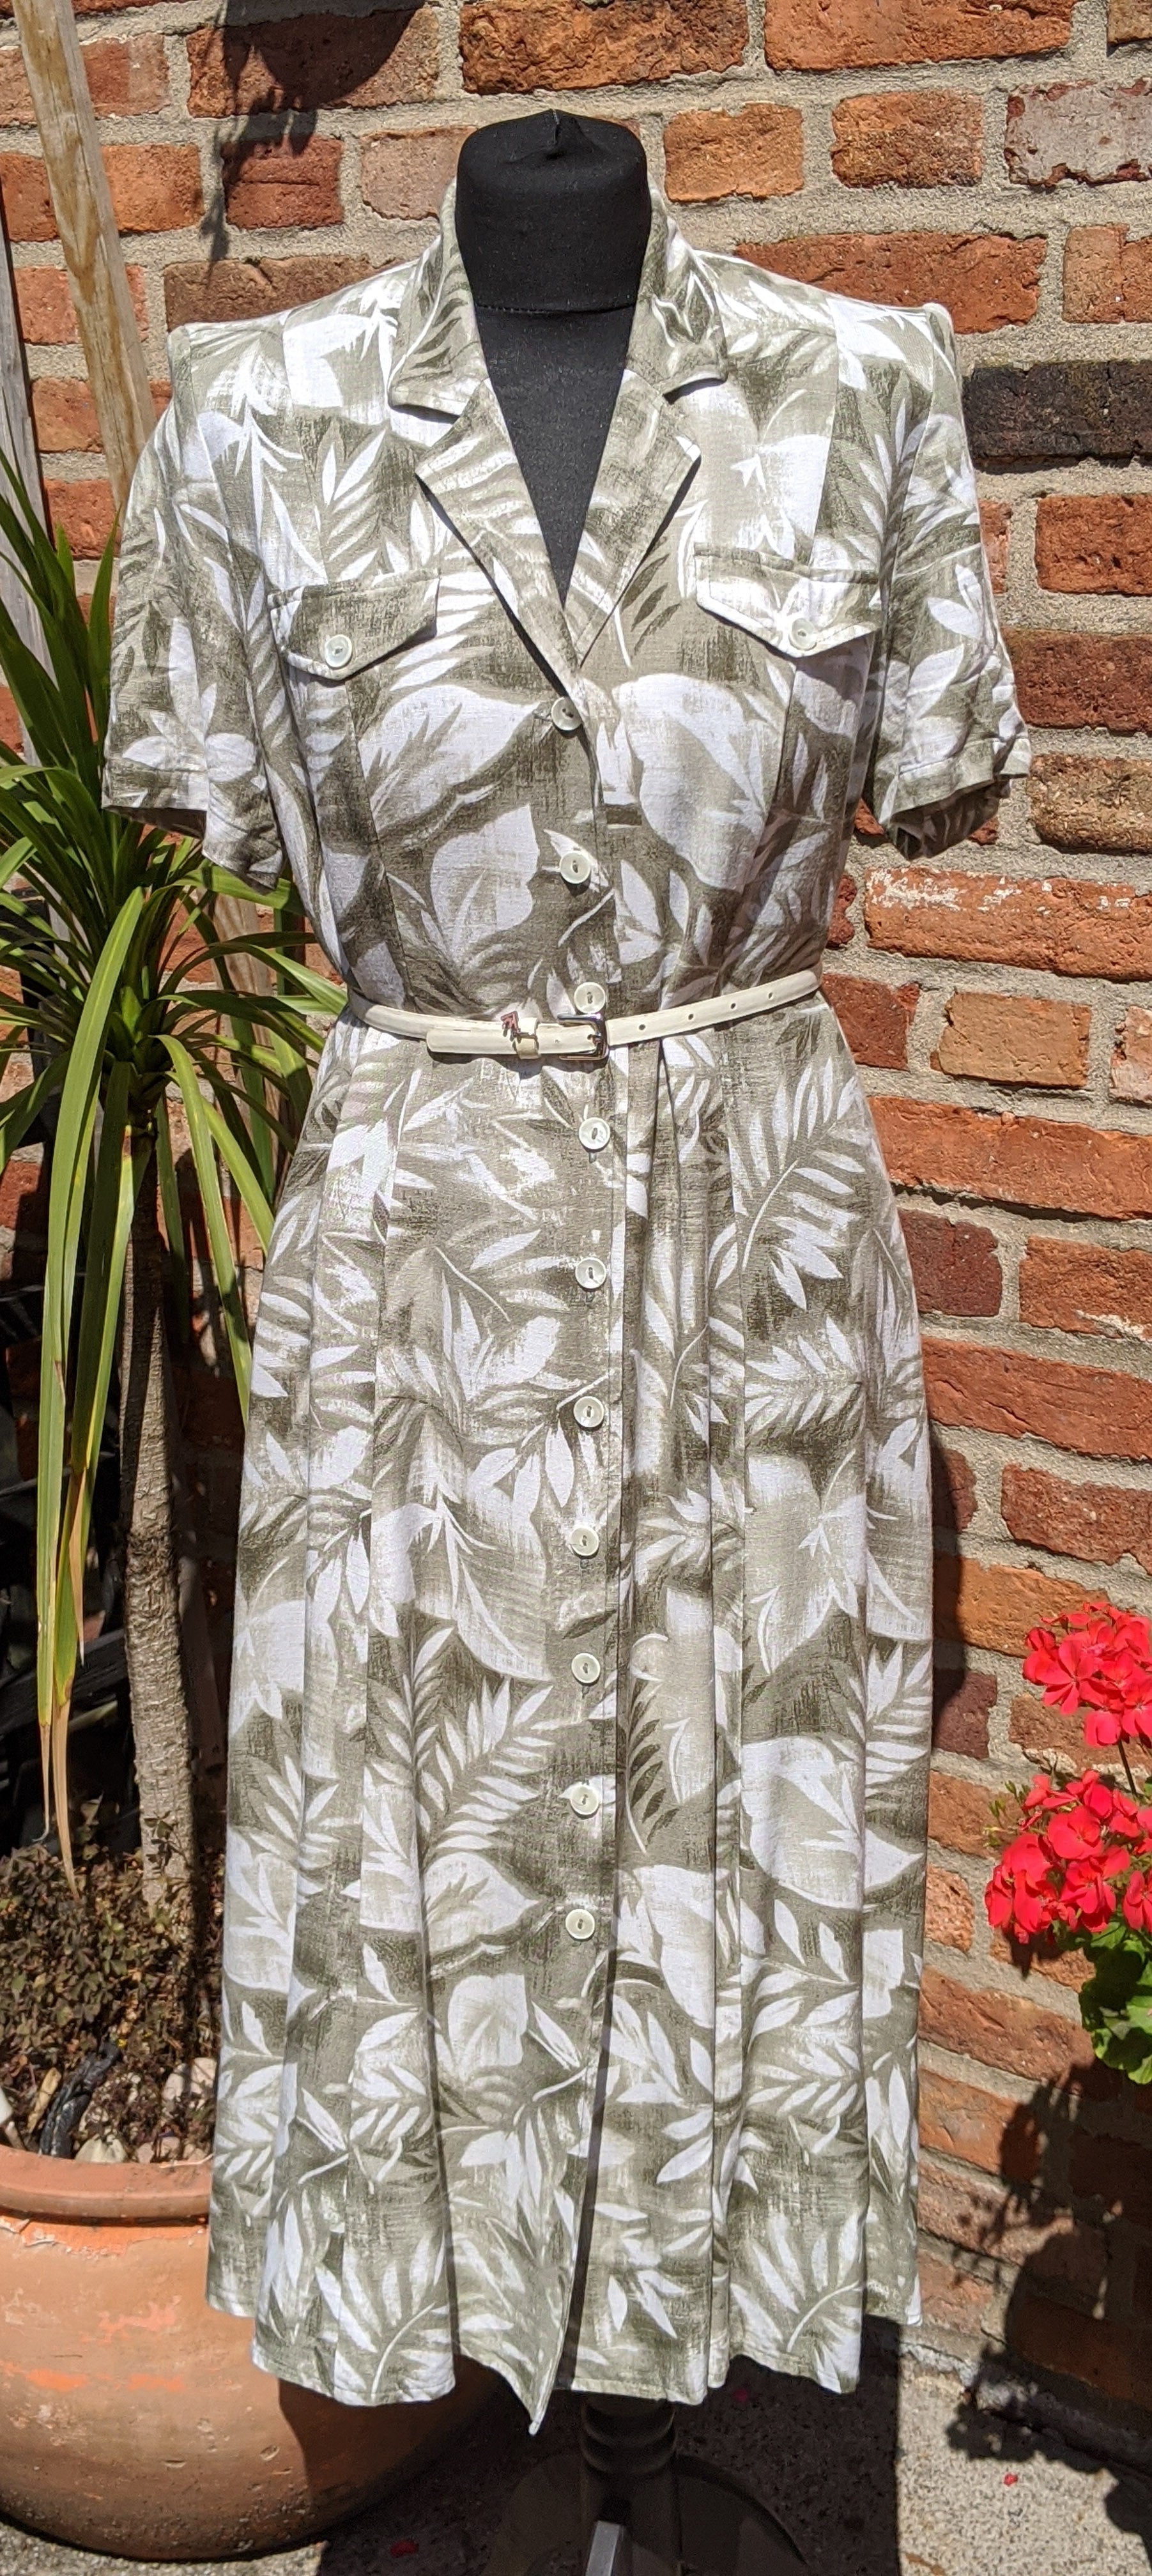 90s subtle floral print dress size 14/16